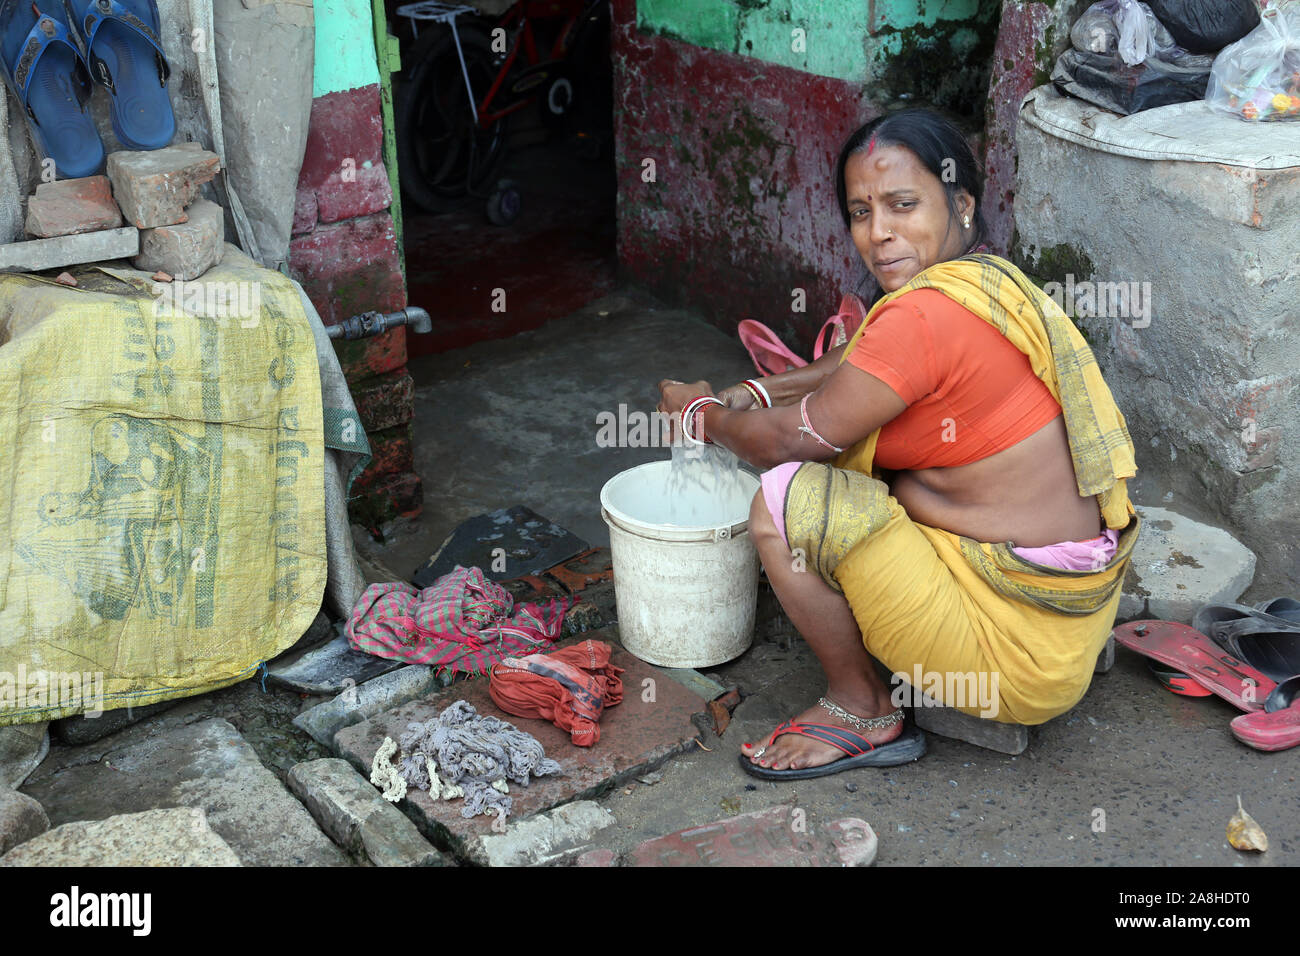 Ghetto and slums in Kolkata India Stock Photo